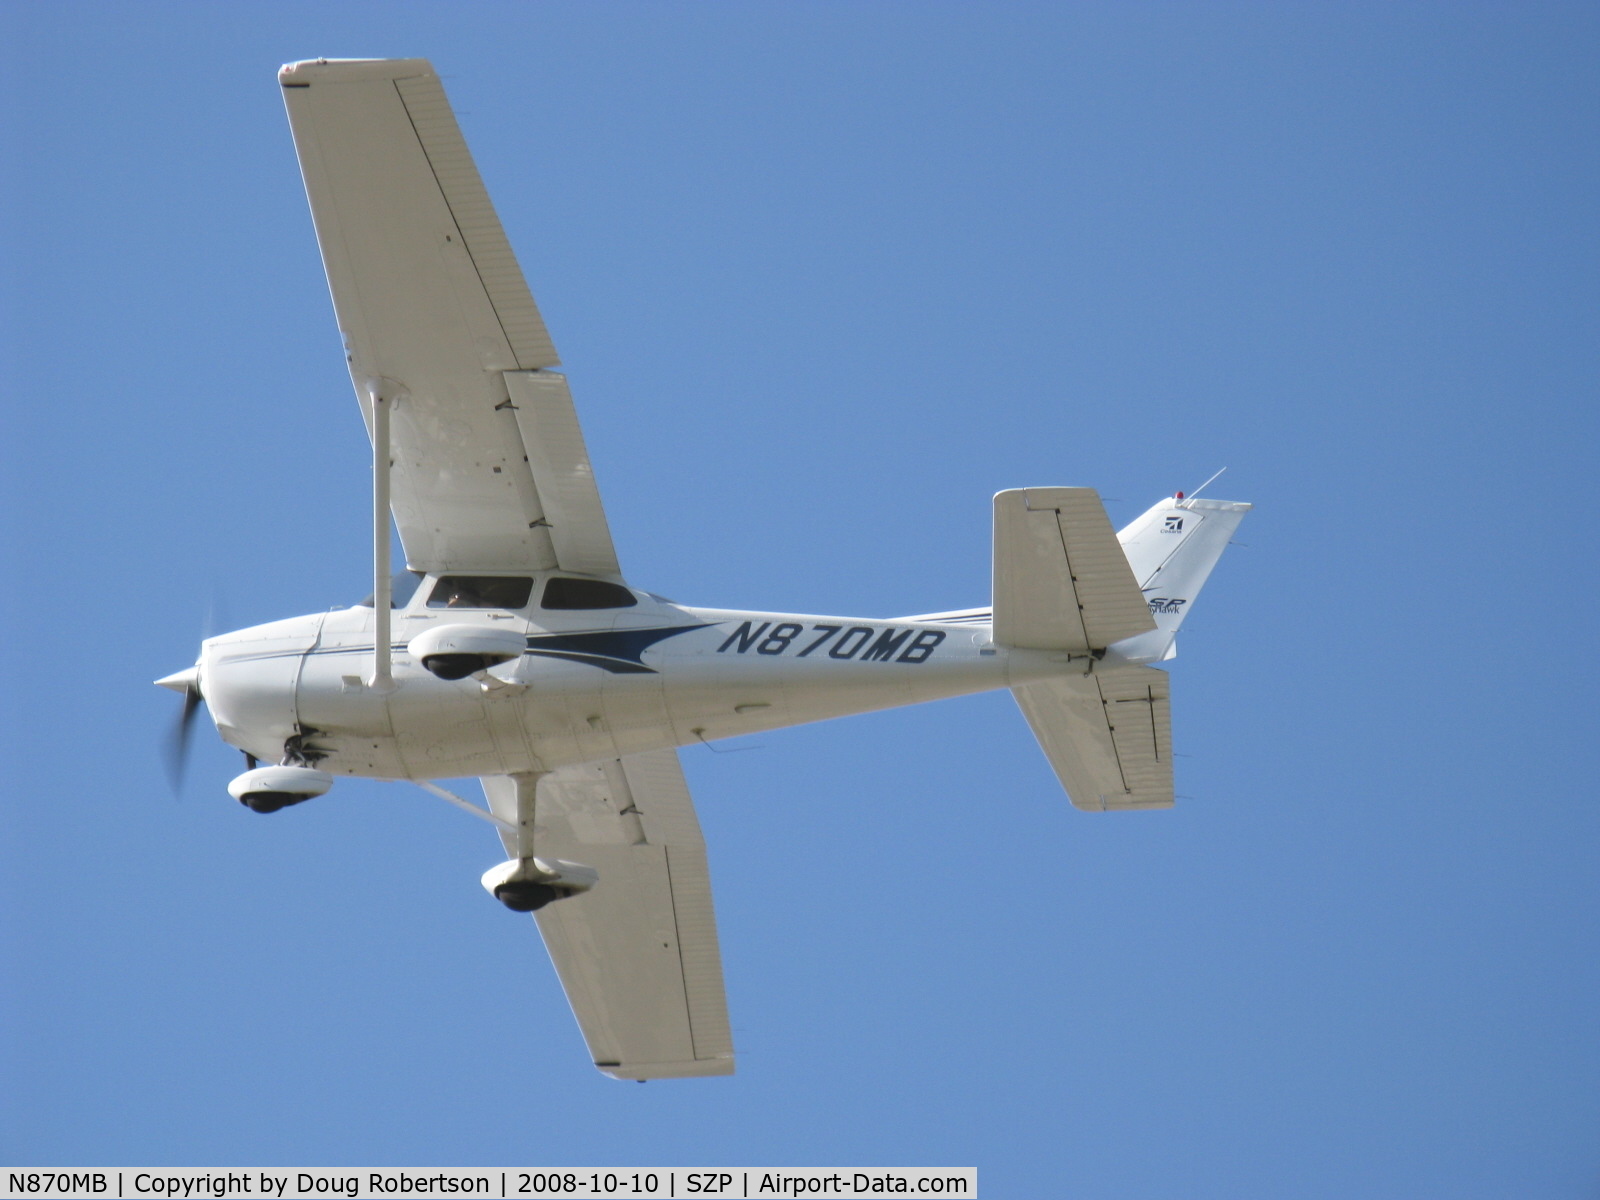 N870MB, 2004 Cessna 172S C/N 172S9725, 2004 Cessna 172S SKYHAWK II SP, Lycoming IO-360-L2A 180 Hp, takeoff climb Rwy 22